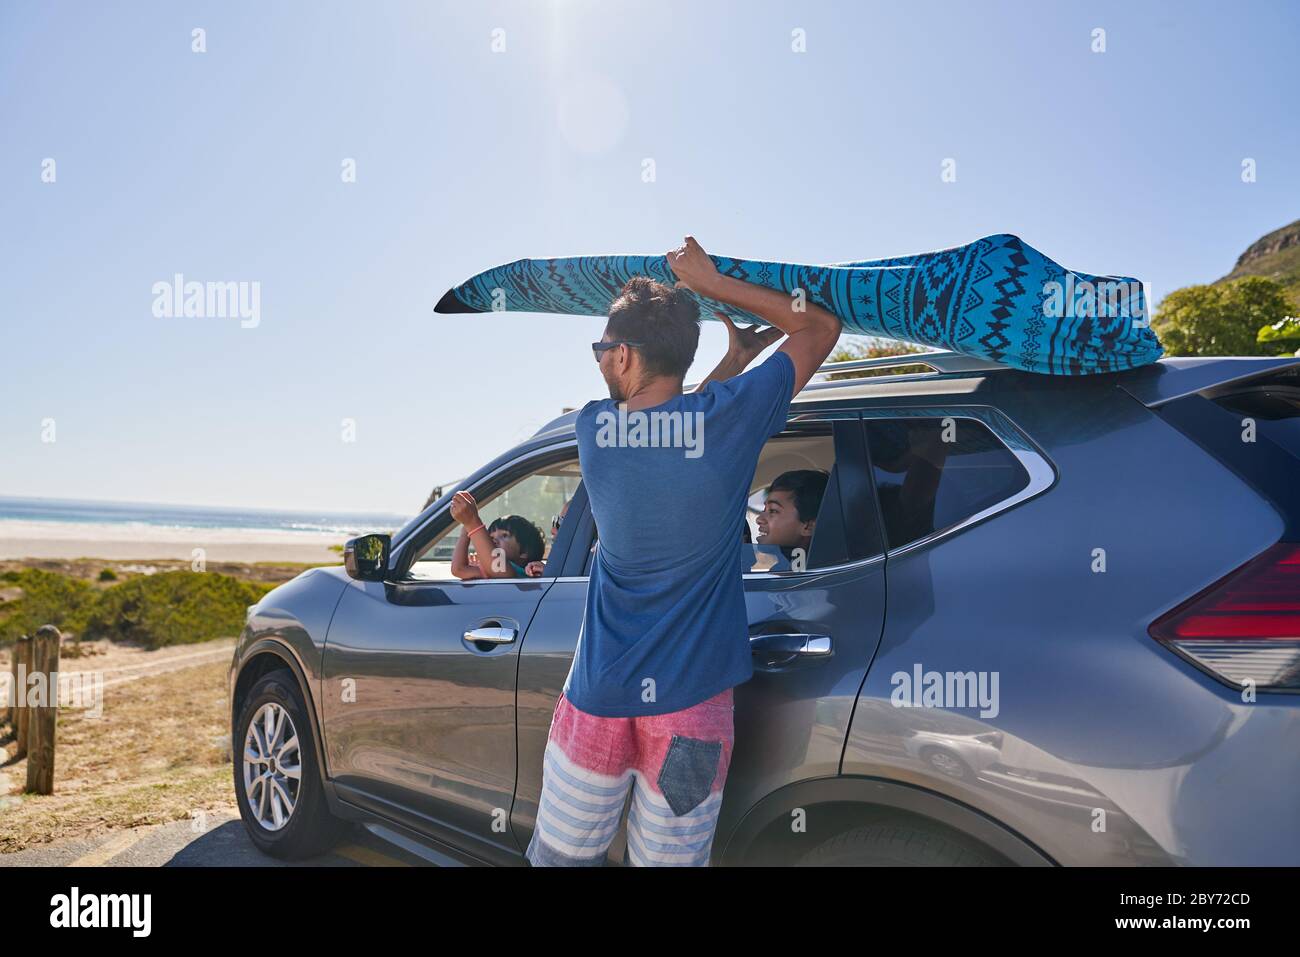 Hombre quitando la tabla de surf de la parte superior del coche en el aparcamiento de la playa Foto de stock